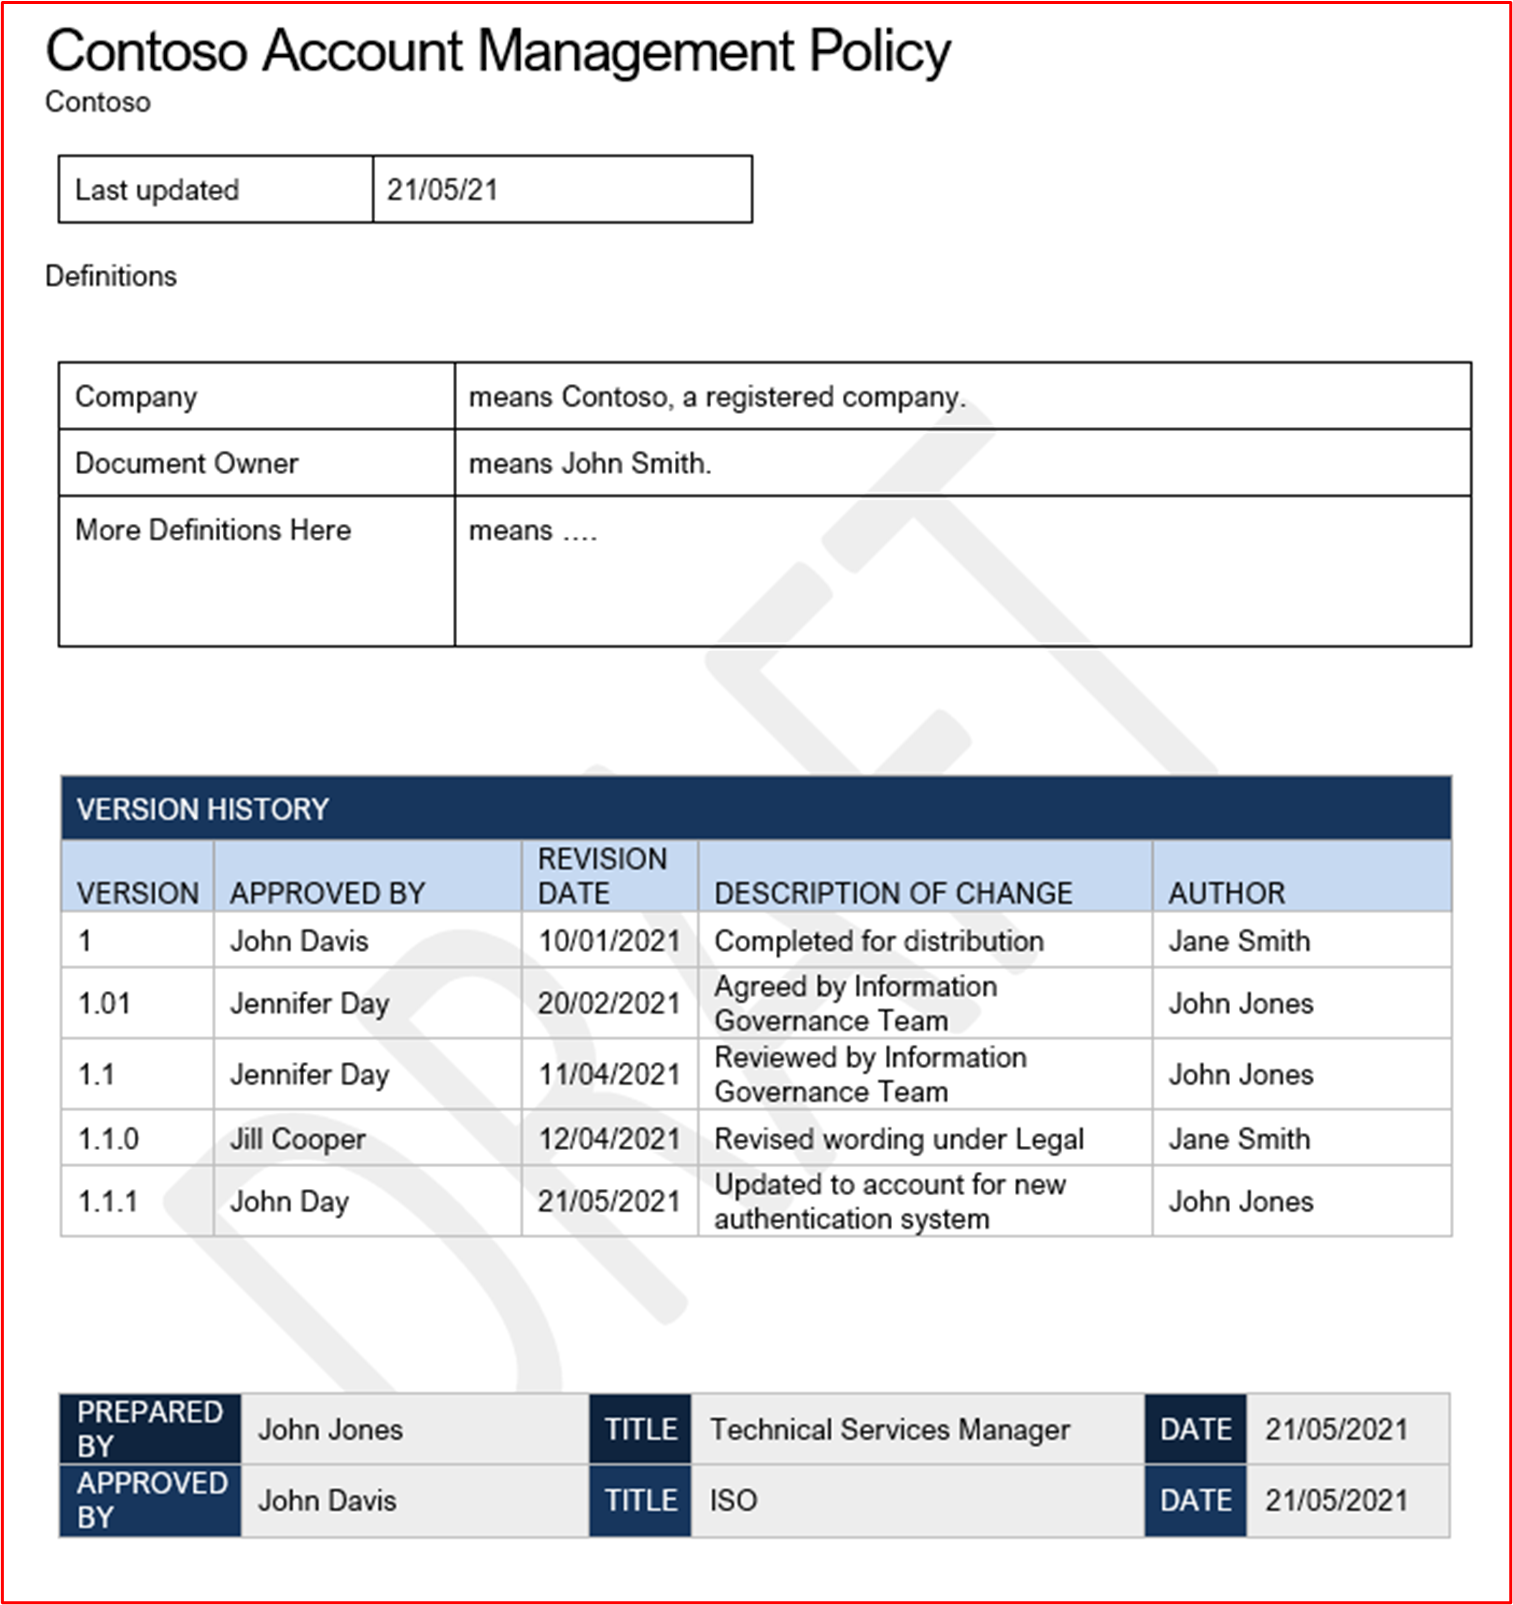 Снимок экрана: пример политики управления учетными записями для Contoso.